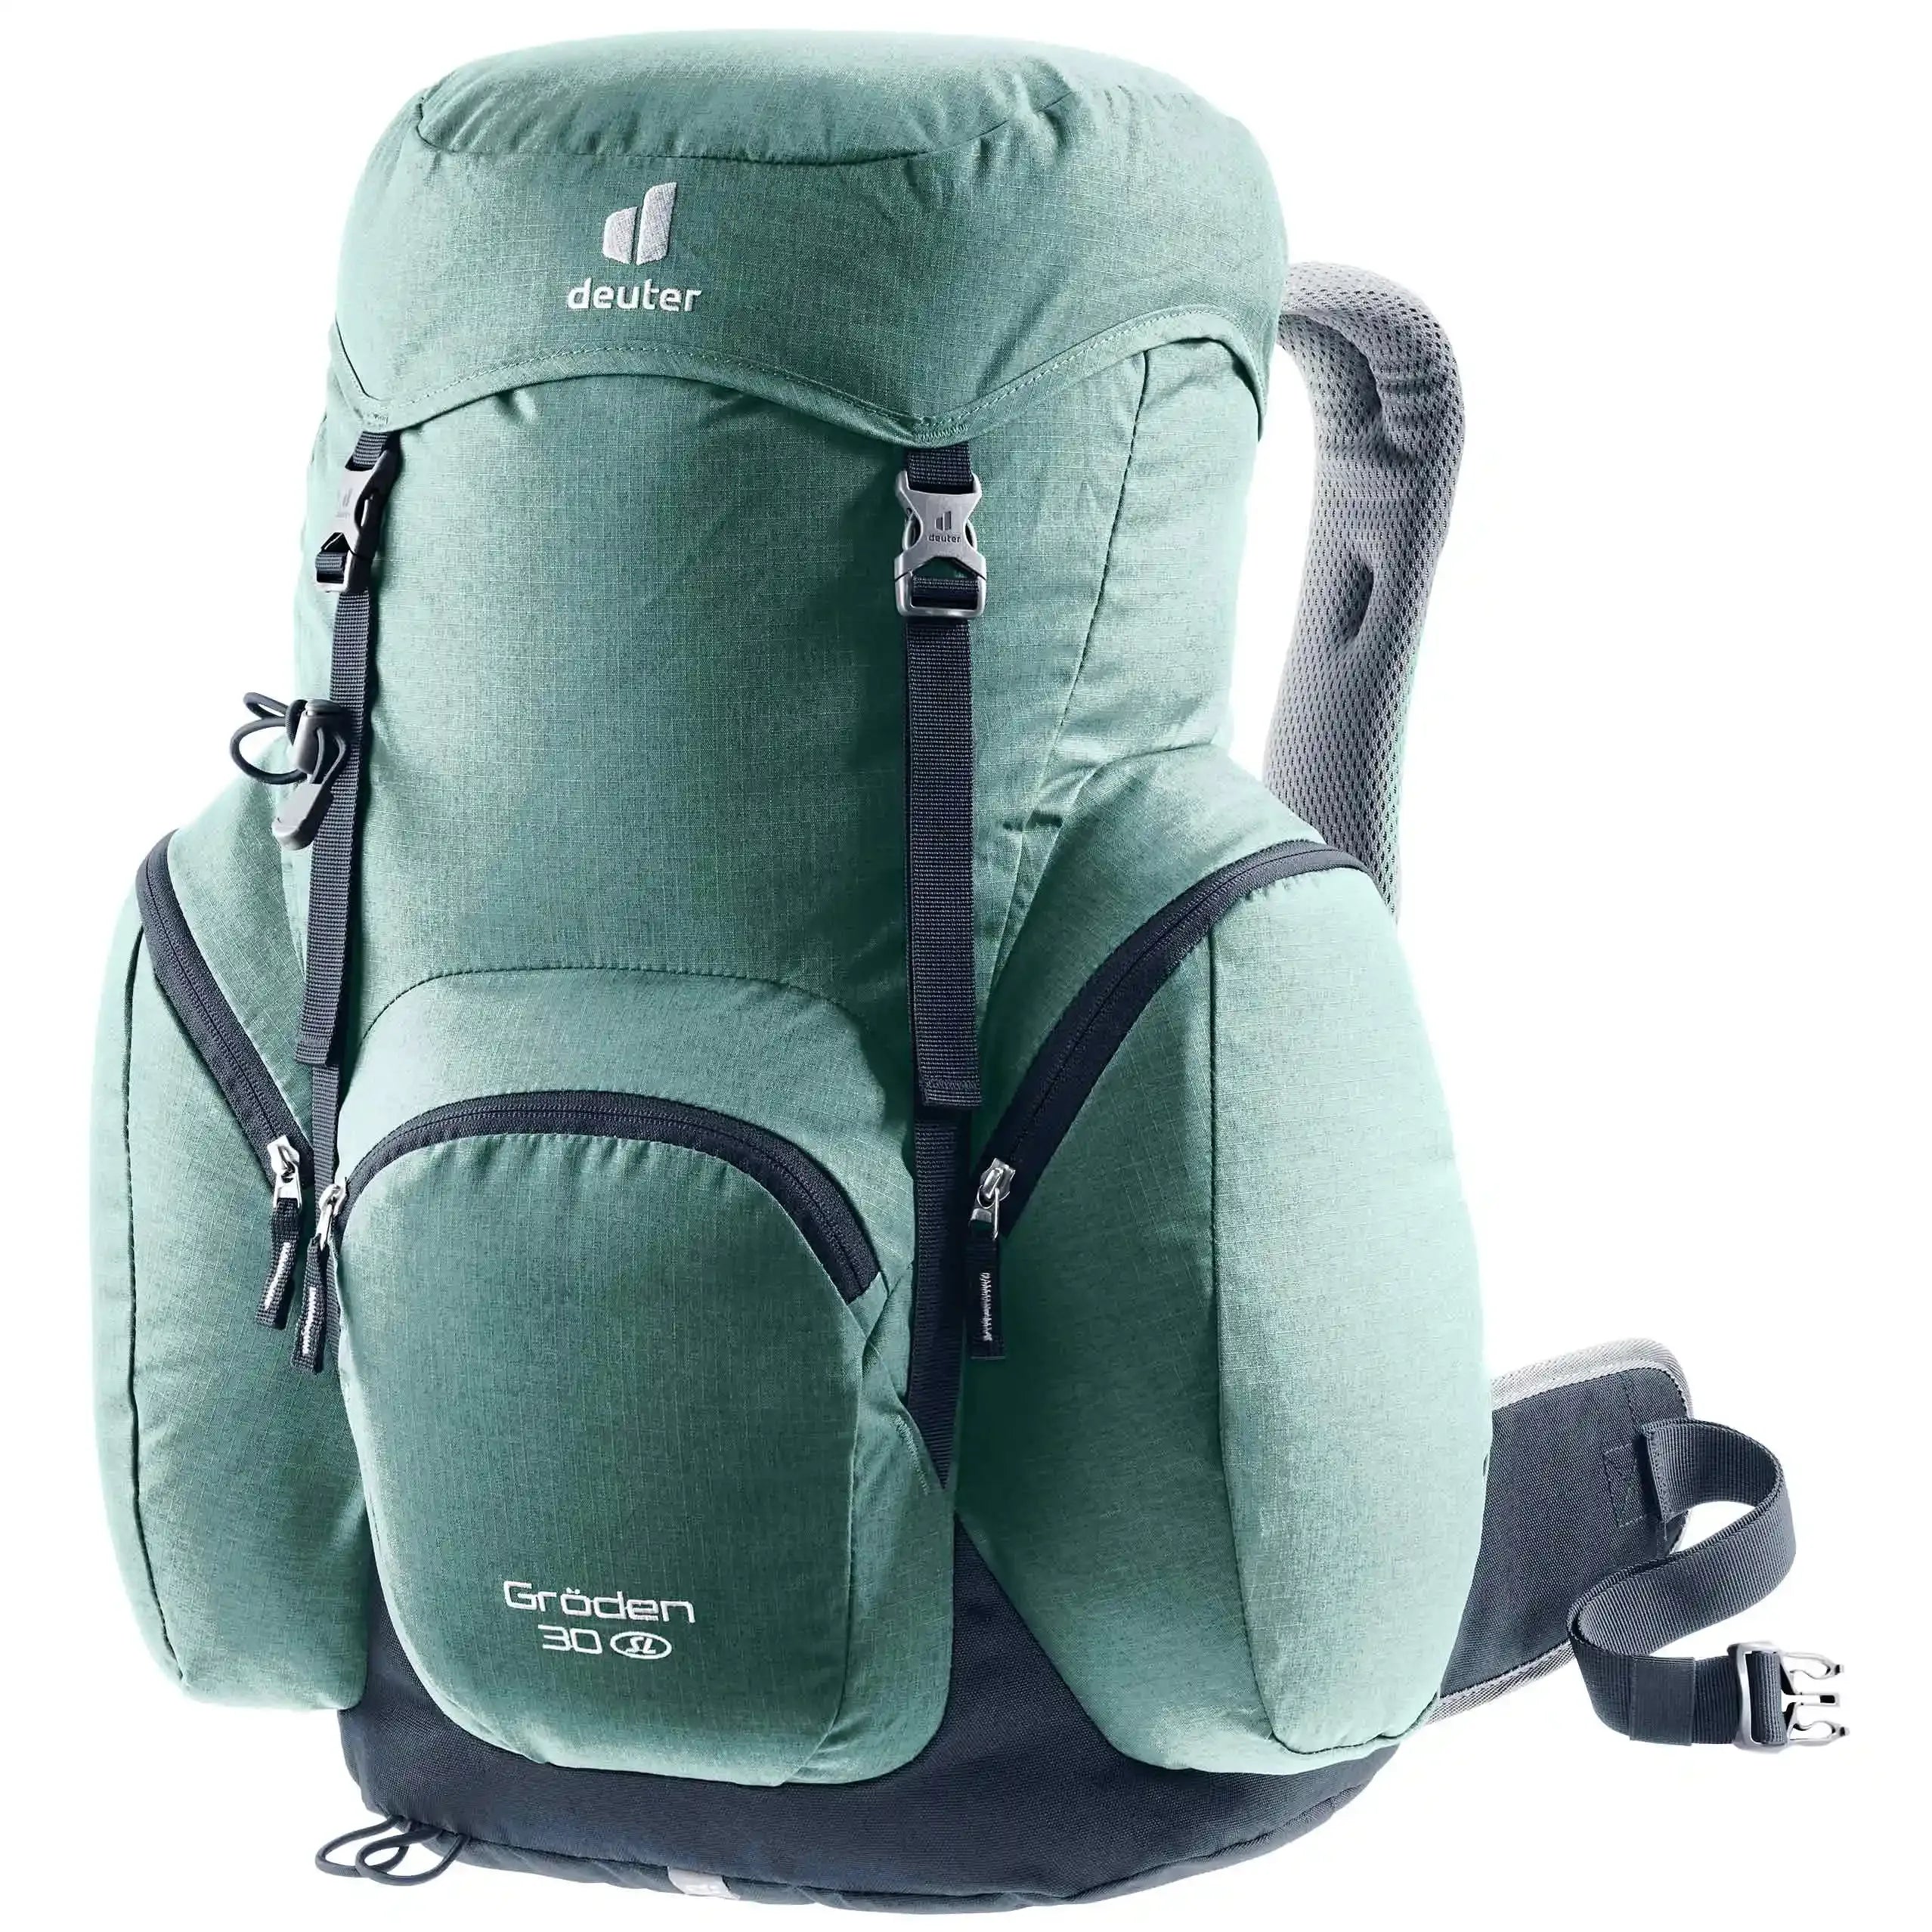 Deuter Travel Gröden 30 SL hiking backpack 52 cm - jade-ink